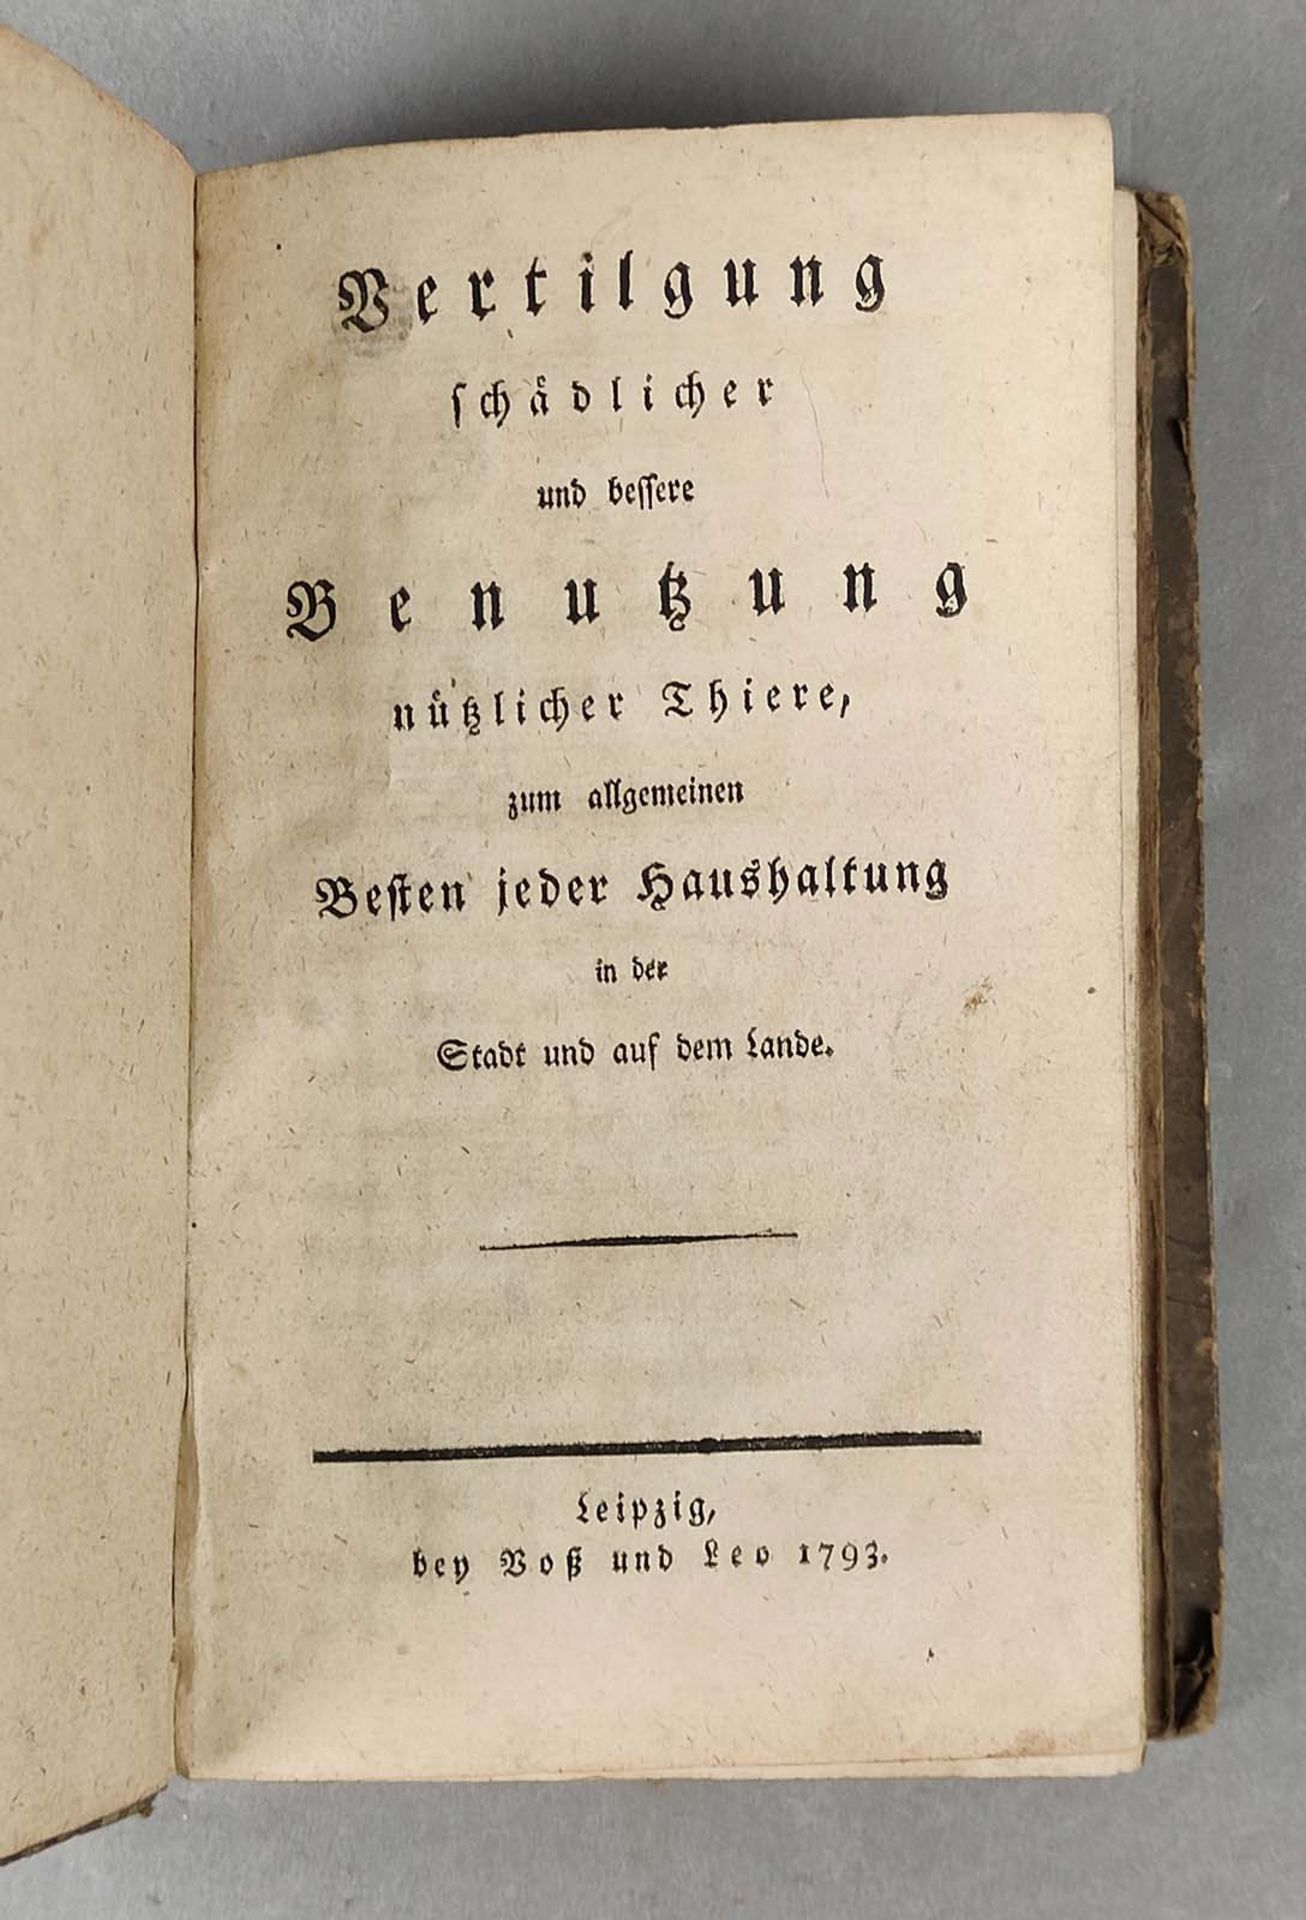 Vertilgung schädlicher und bessere ... 1793